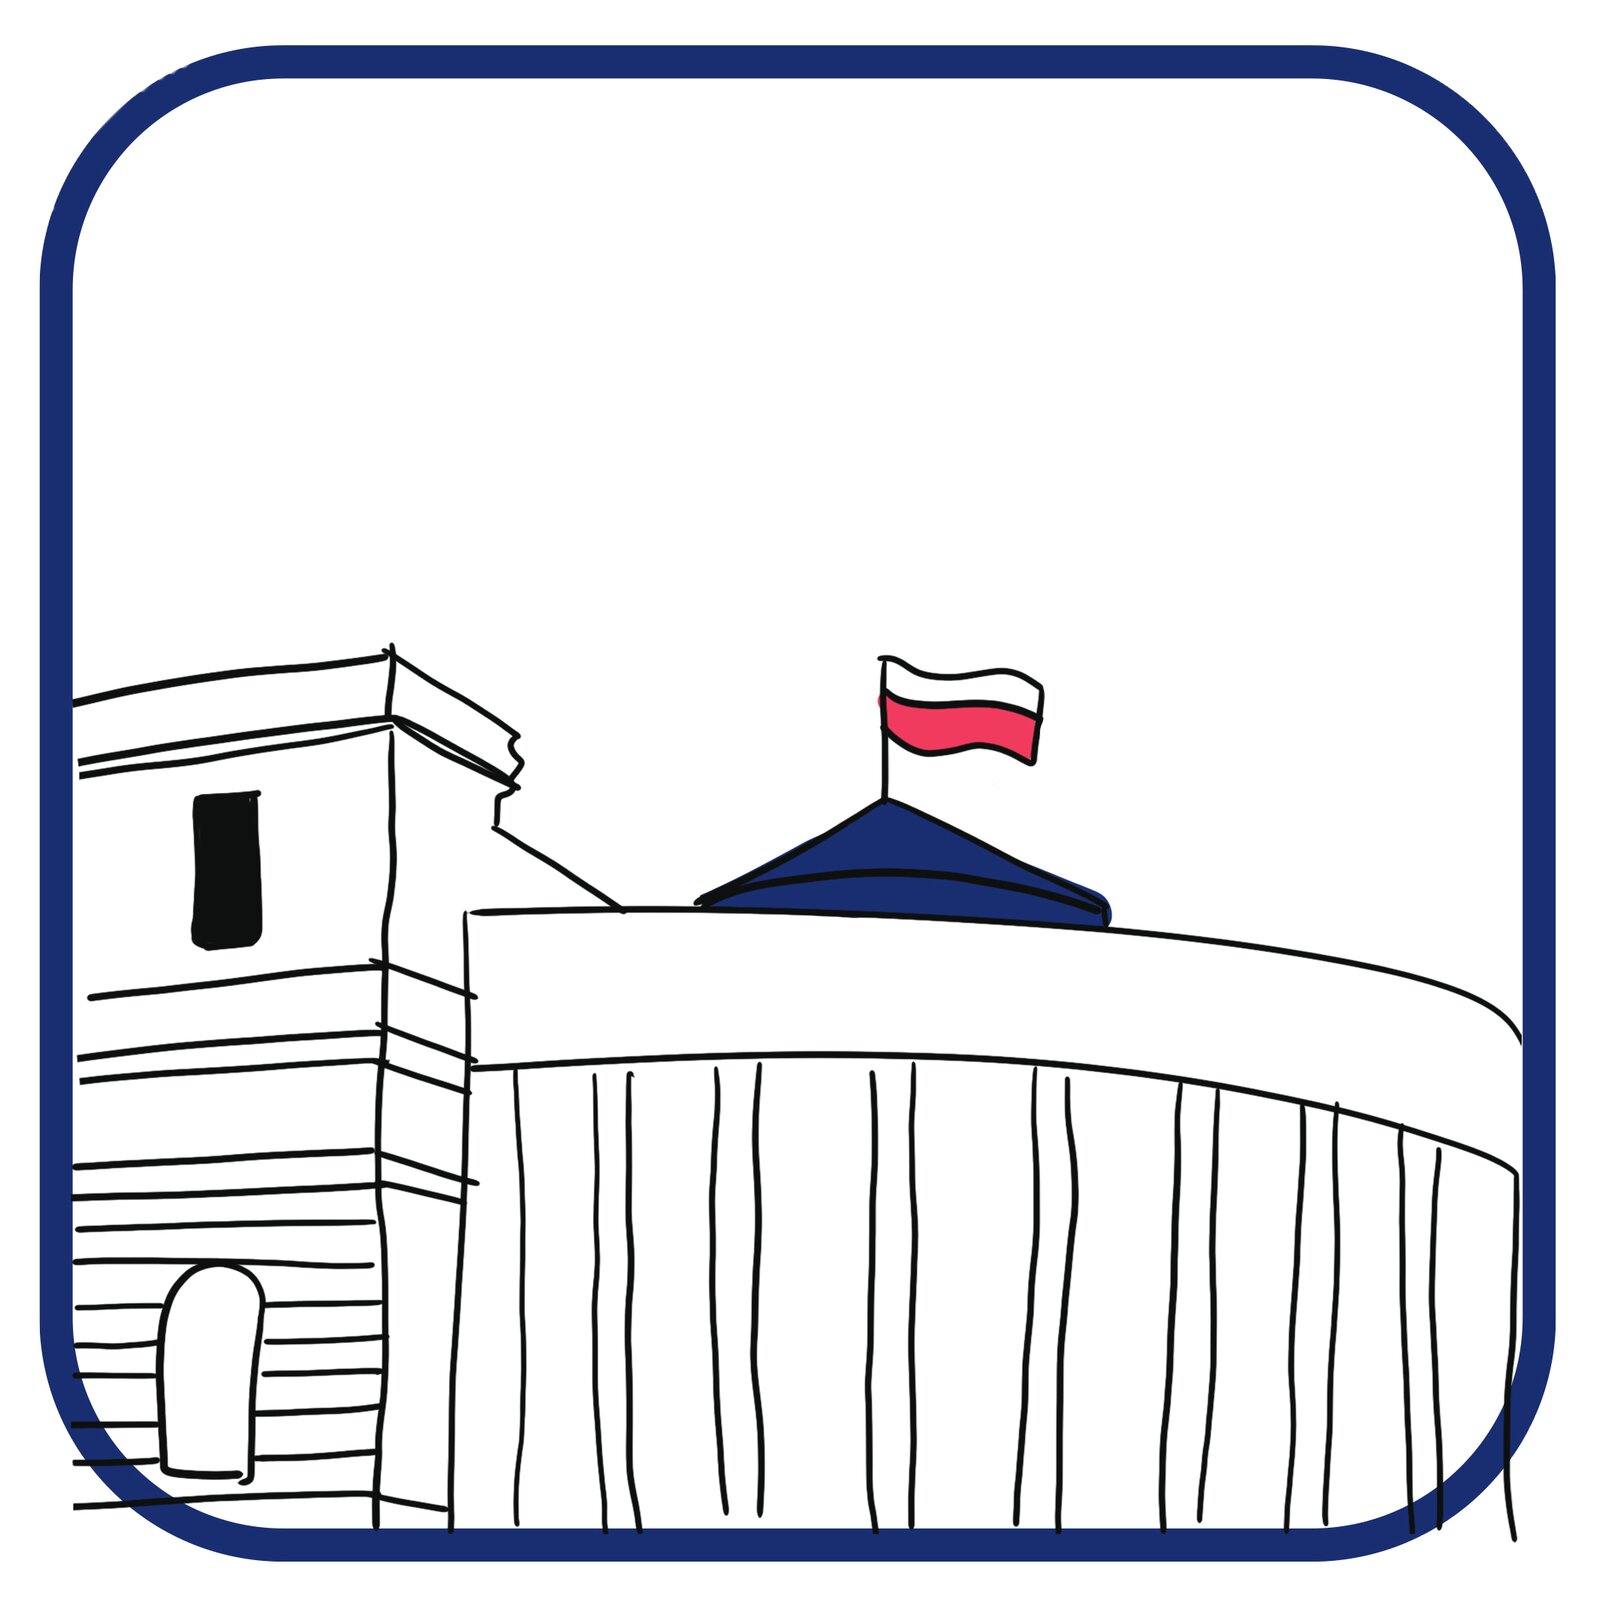 Budynek Sejmu, z widokiem na półokrągłą fasadę. Na budynku powiewa biało-czerwona flaga Polski.